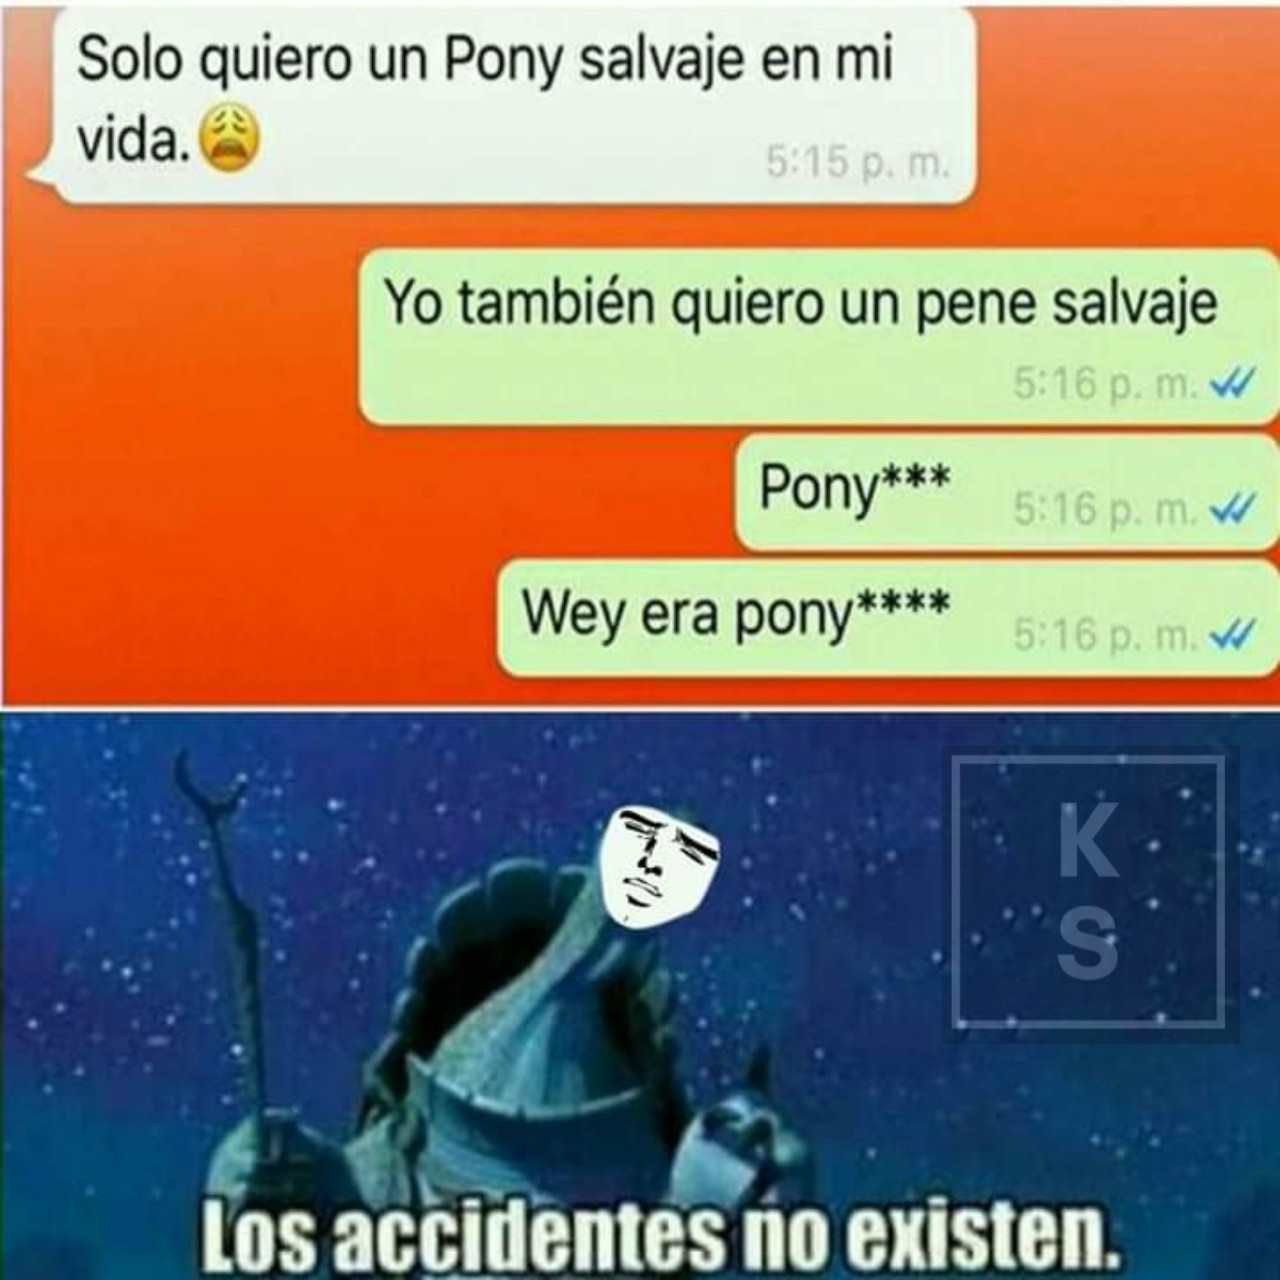 Pony sii claaro - meme